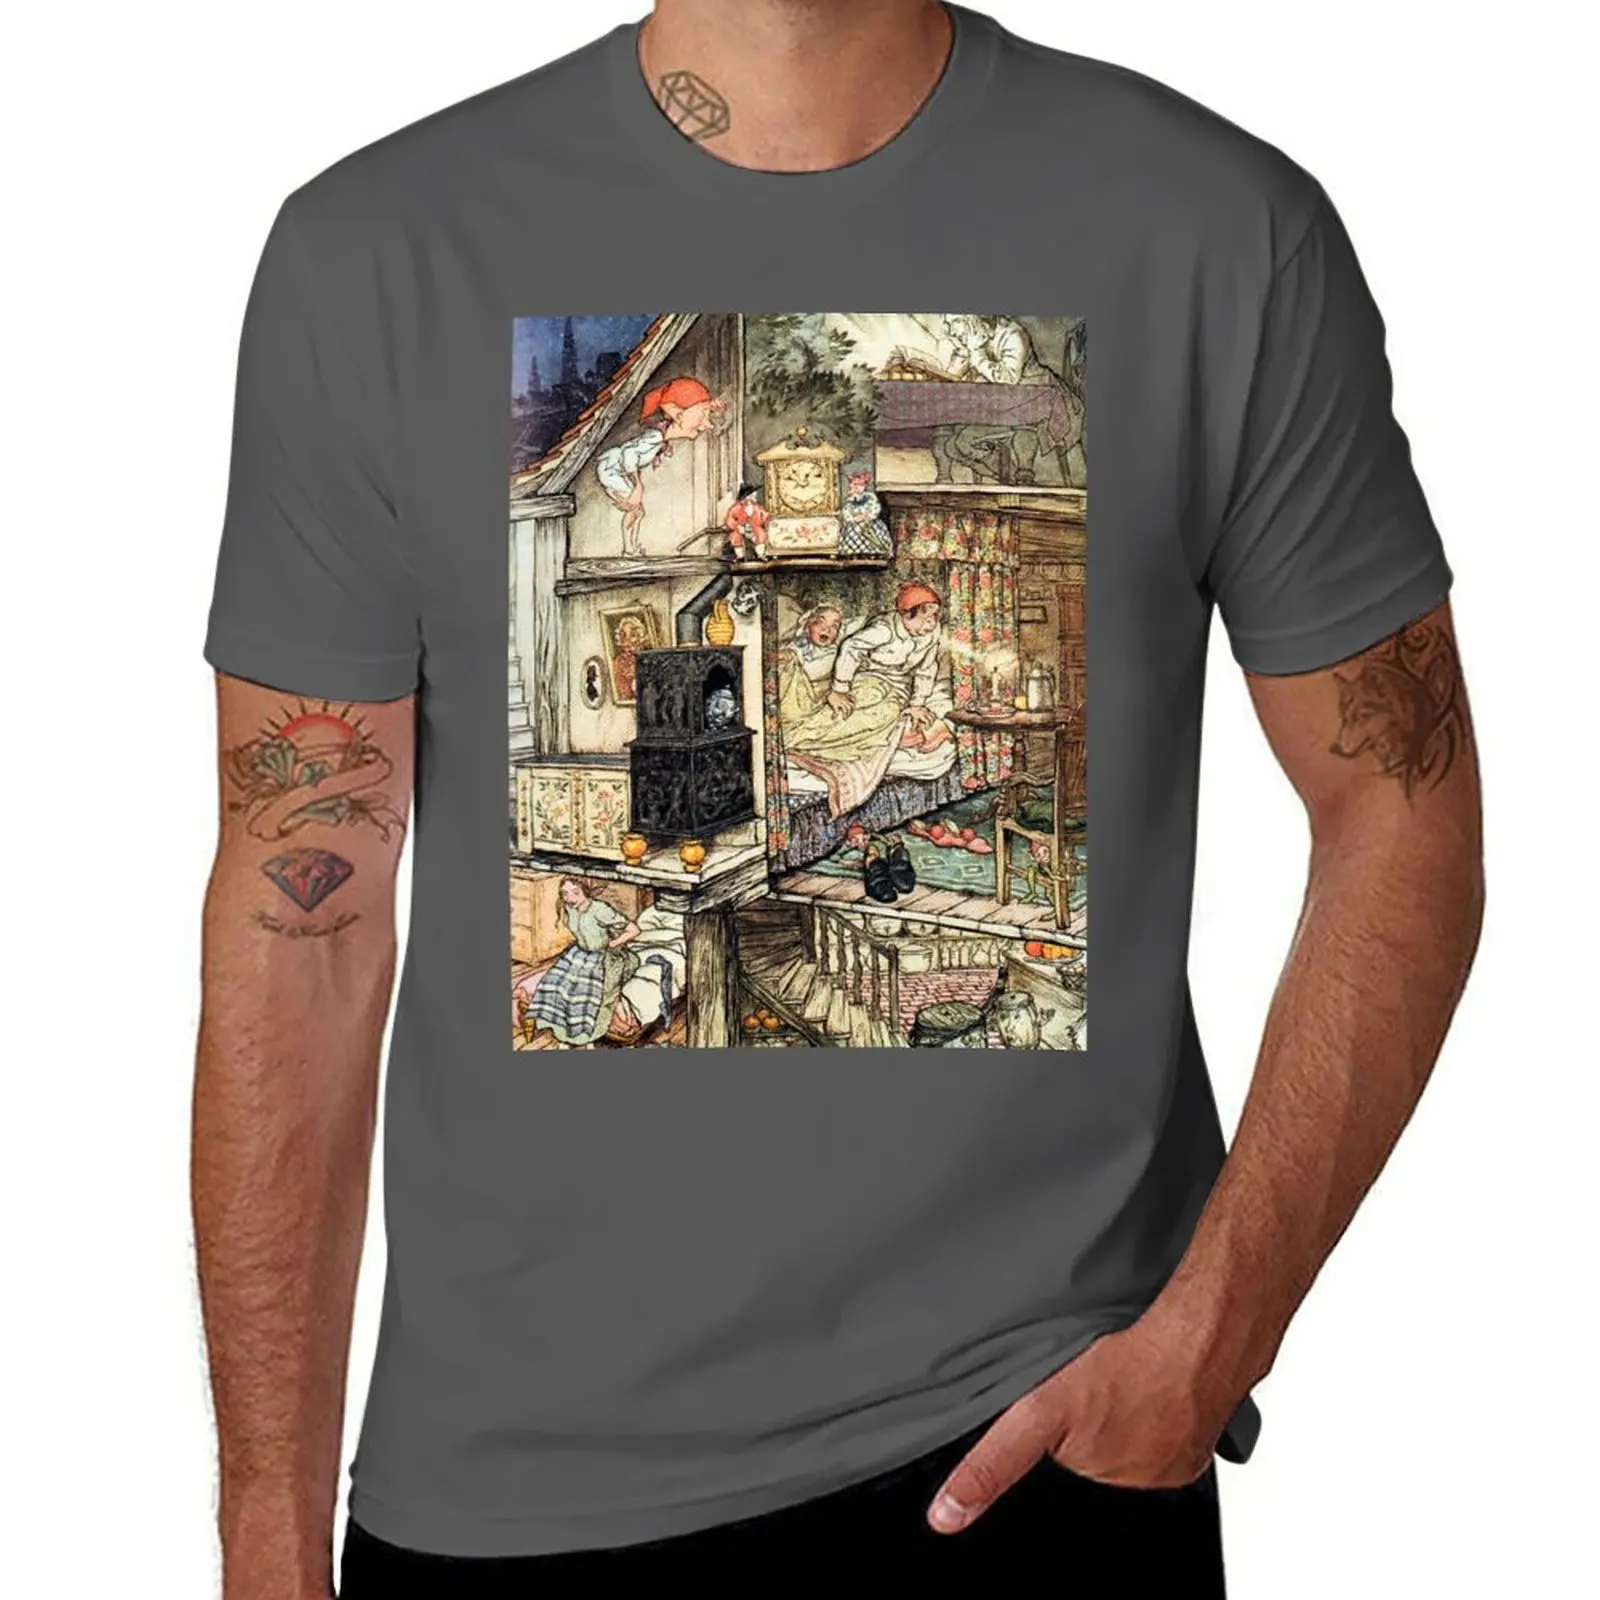 Новый Гоблин и Торговец Провизией - футболка с рисунком Артура Рэкхэма, футболка с рисунком аниме, мужская футболка с рисунком Изображение 0